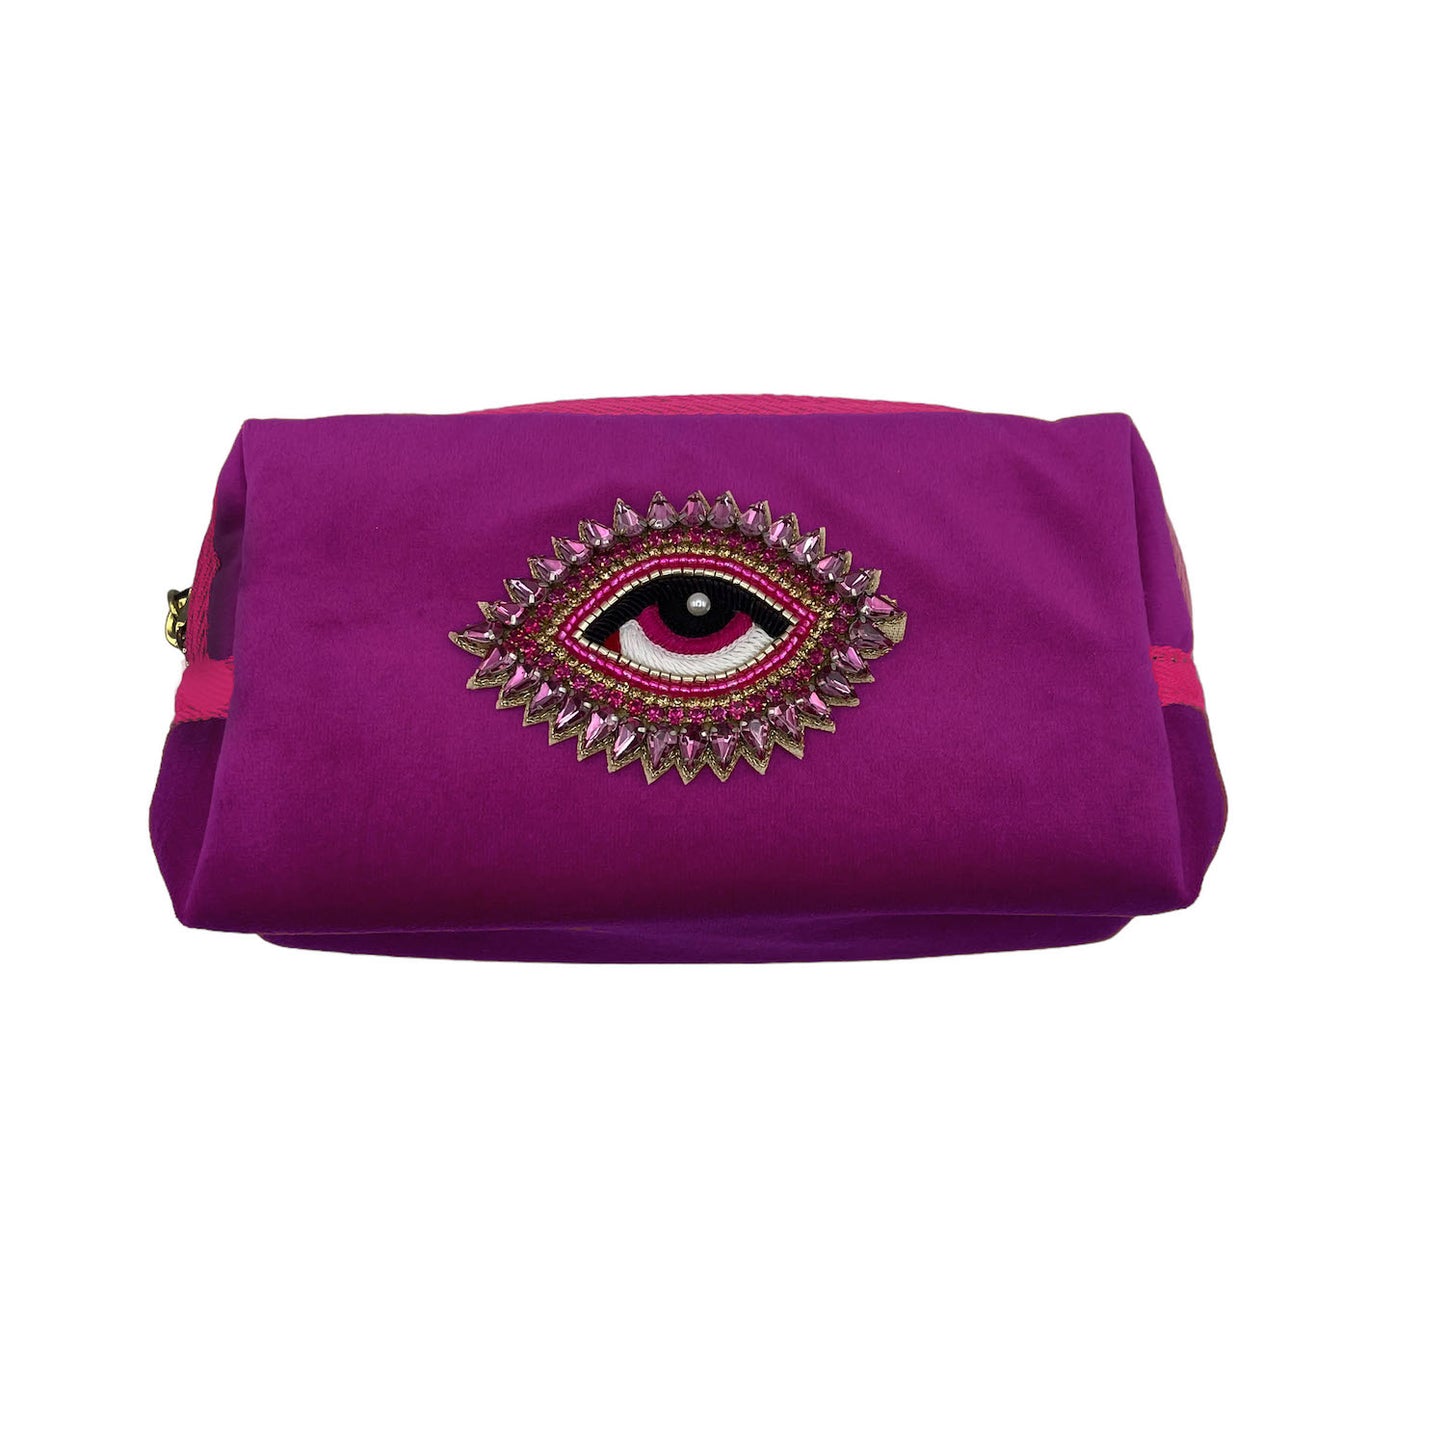 Fuchsia make-up bag & rose eye pin - recycled velvet